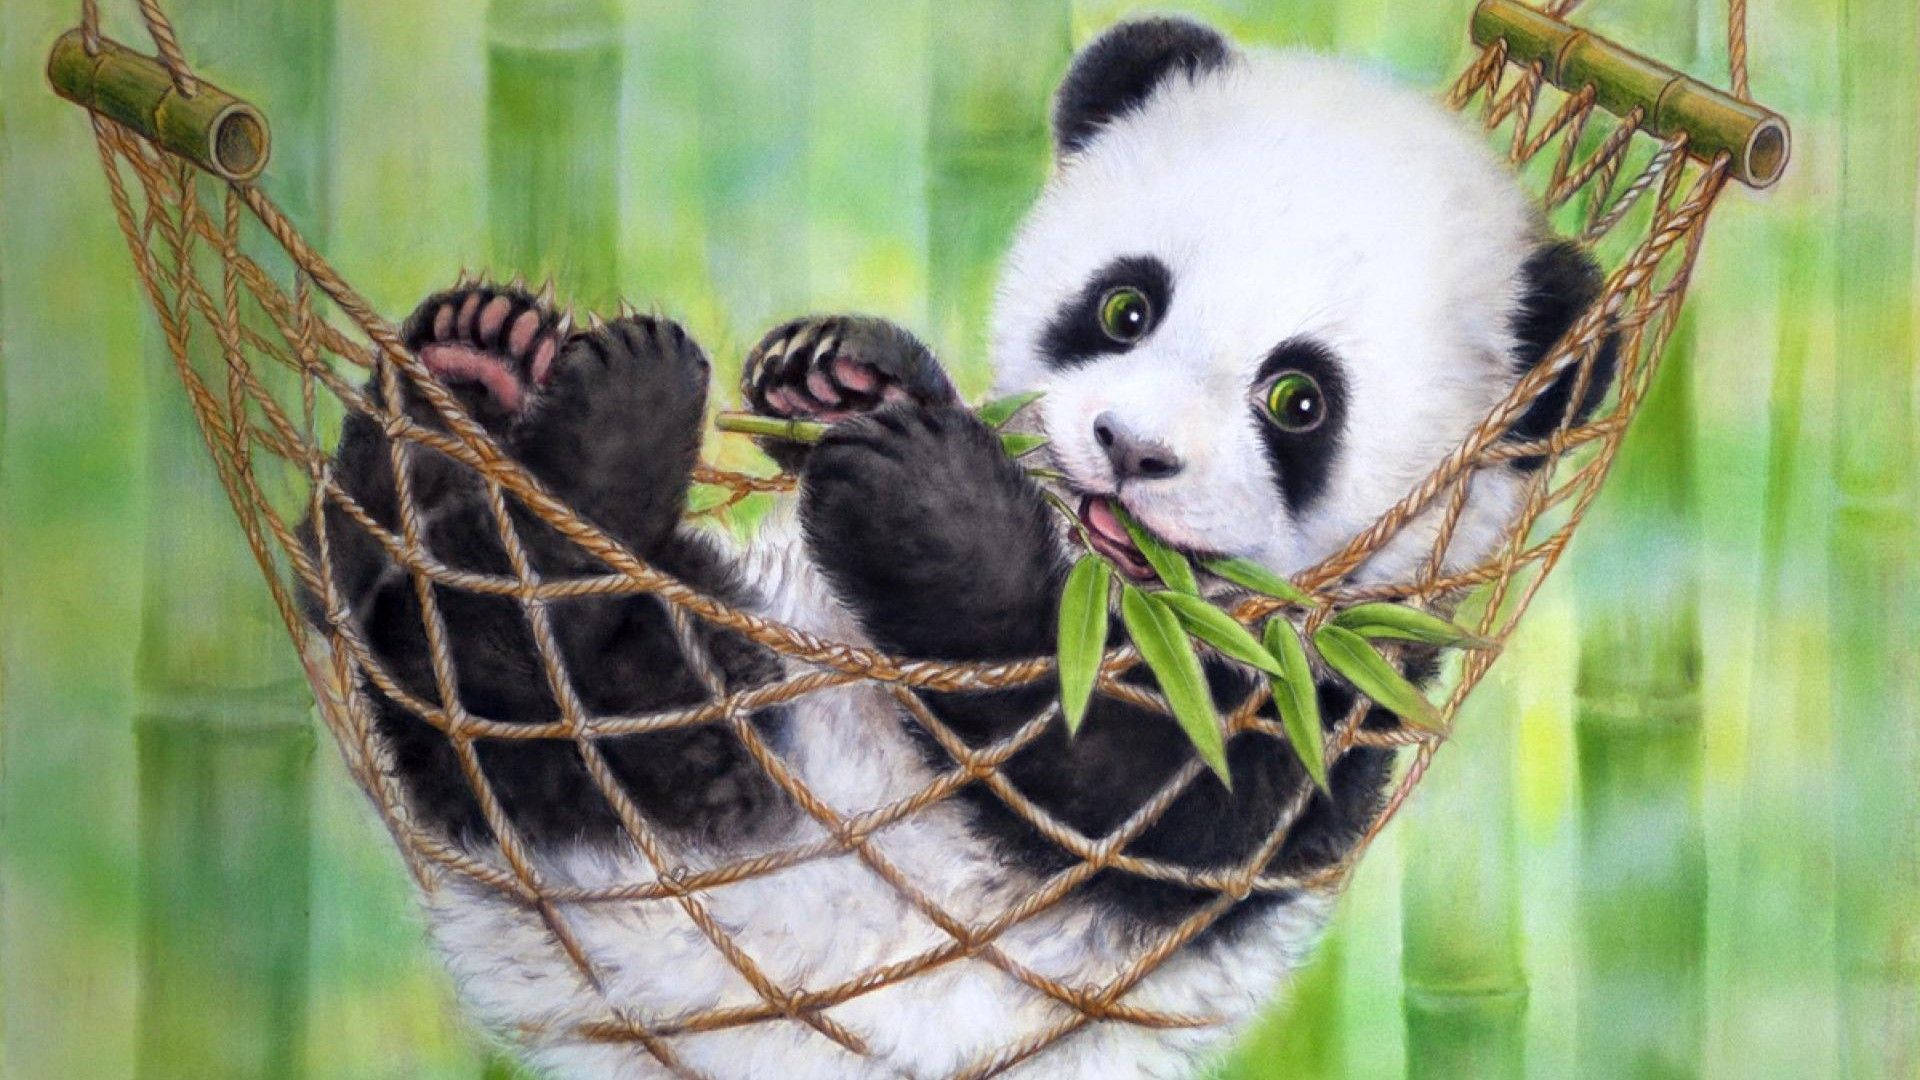 Cute Panda On A Hammock